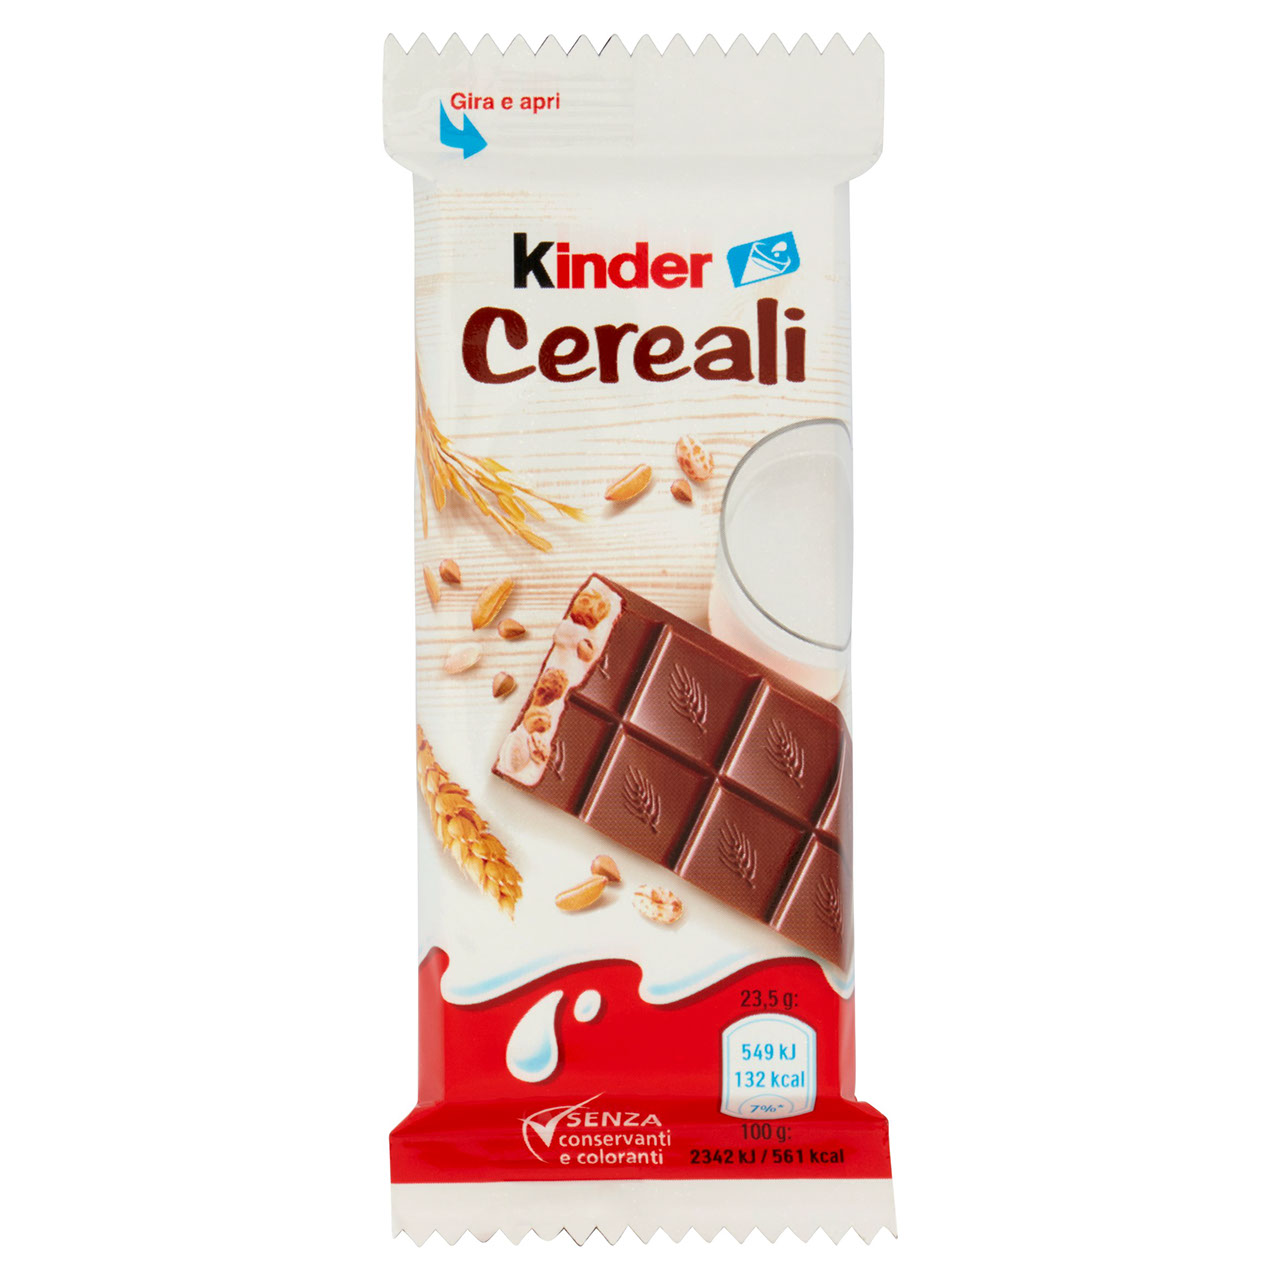 Kinder Cereali 23,5 g in vendita online